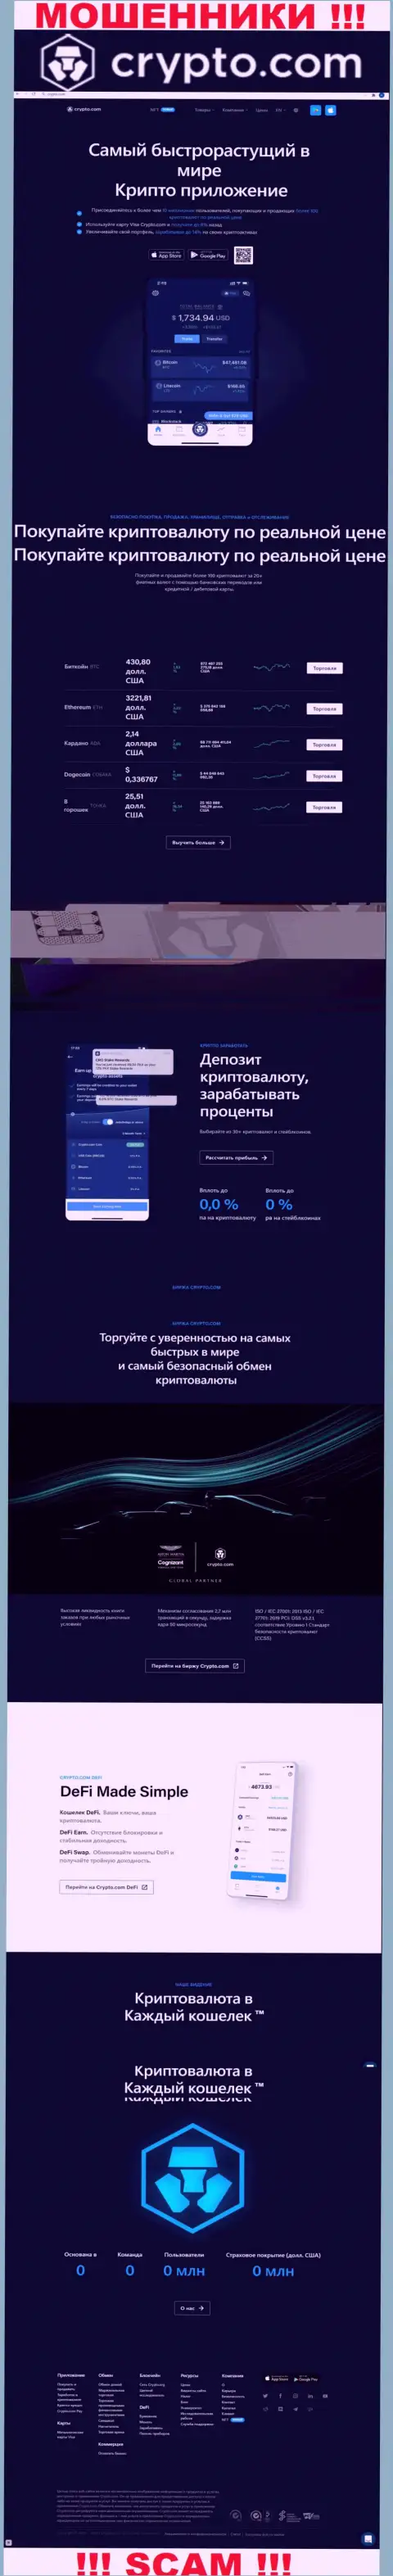 Официальный сайт мошенников КриптоКом, забитый материалами для наивных людей